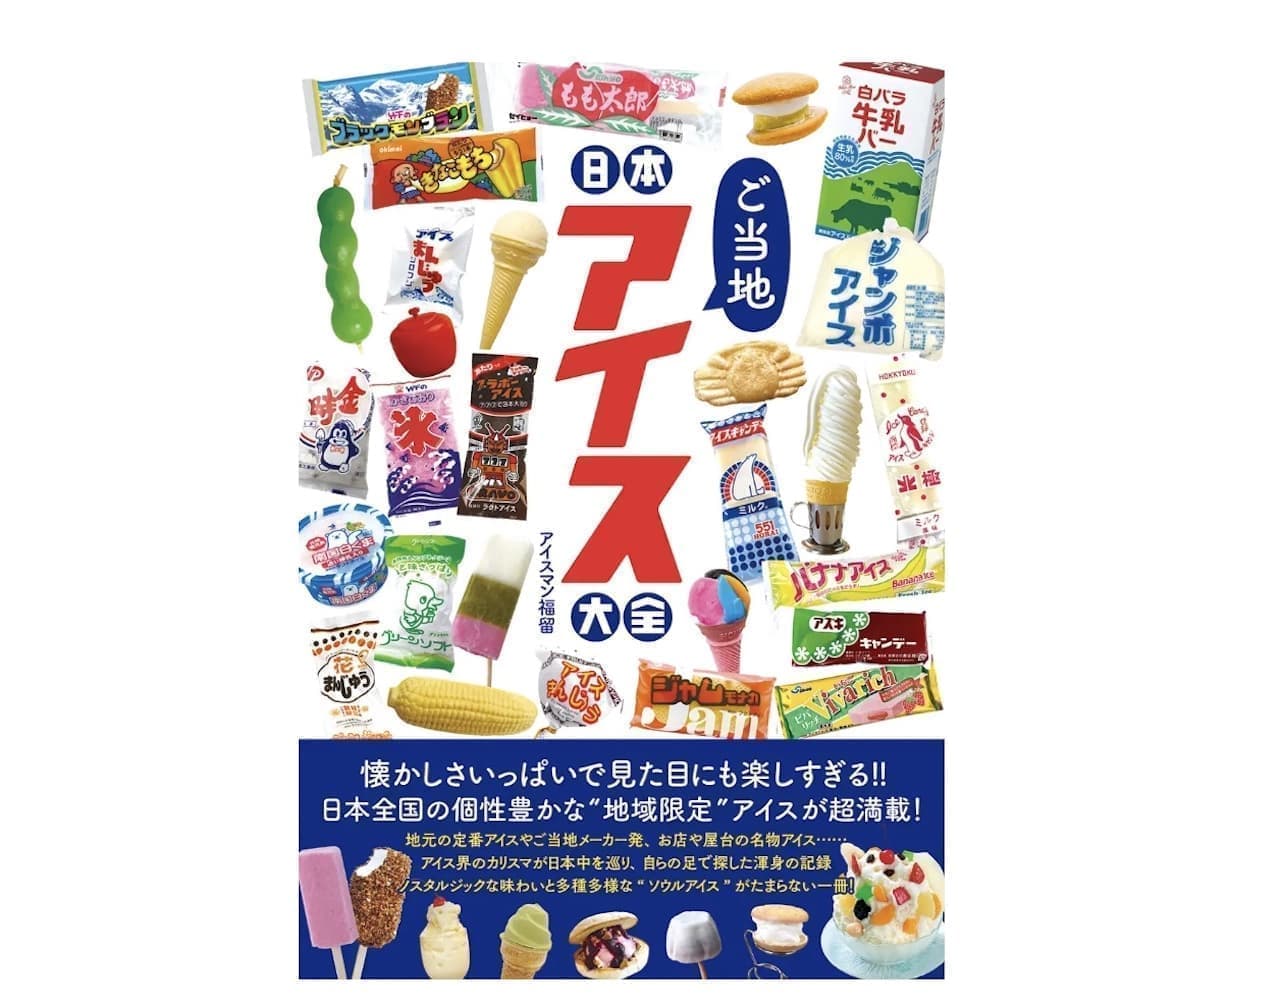 Tatsumi Shuppan "Nihon Gotochi Ice Cream Compendium" (Japan's local ice cream compendium)